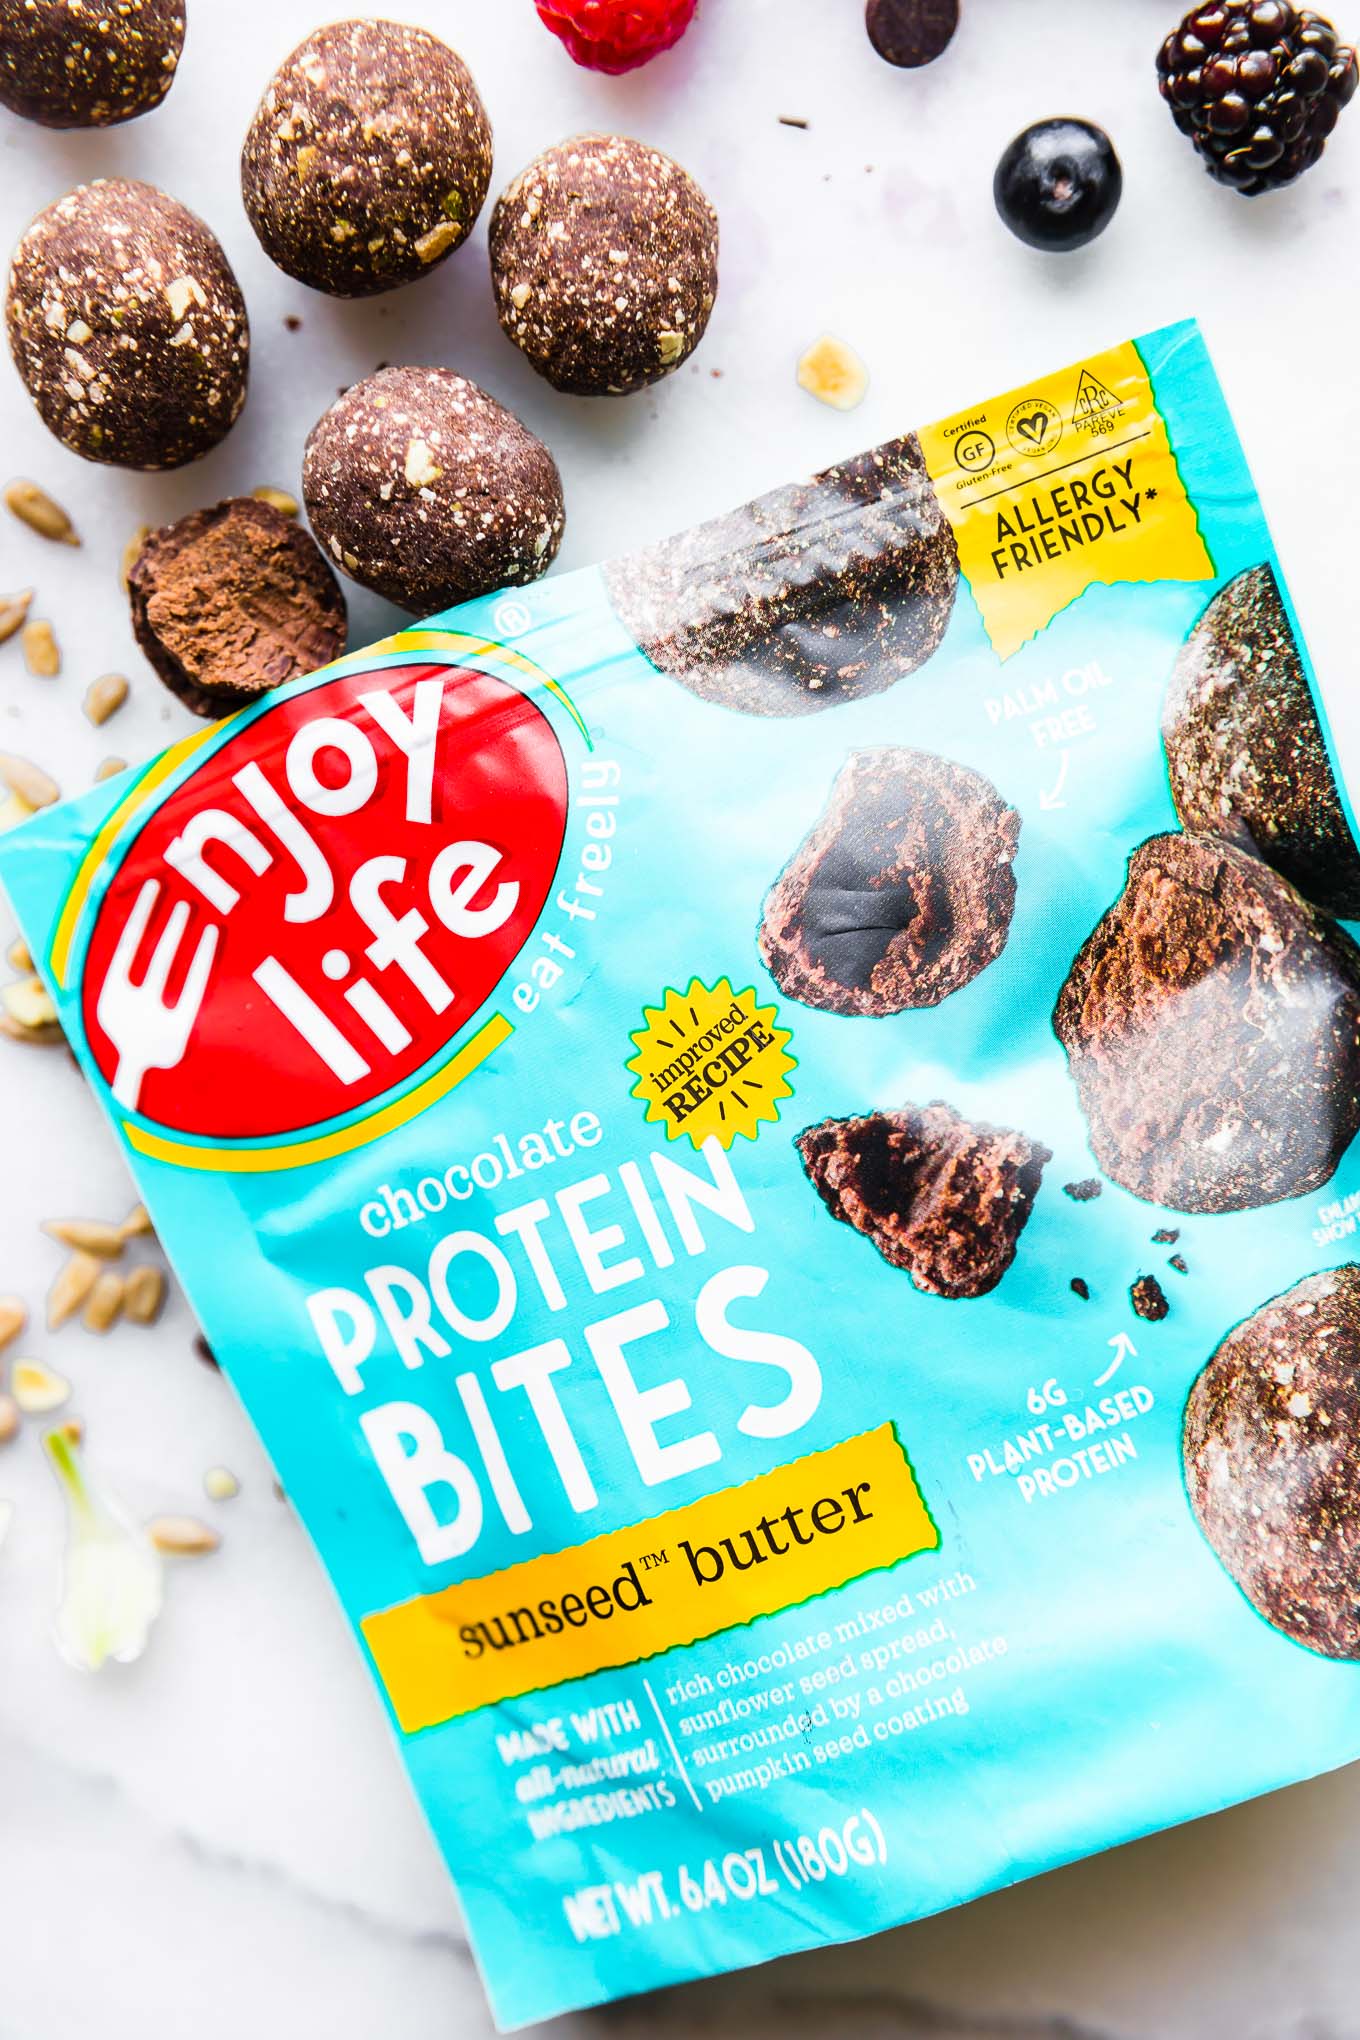 Enjoy Life brand protein bites